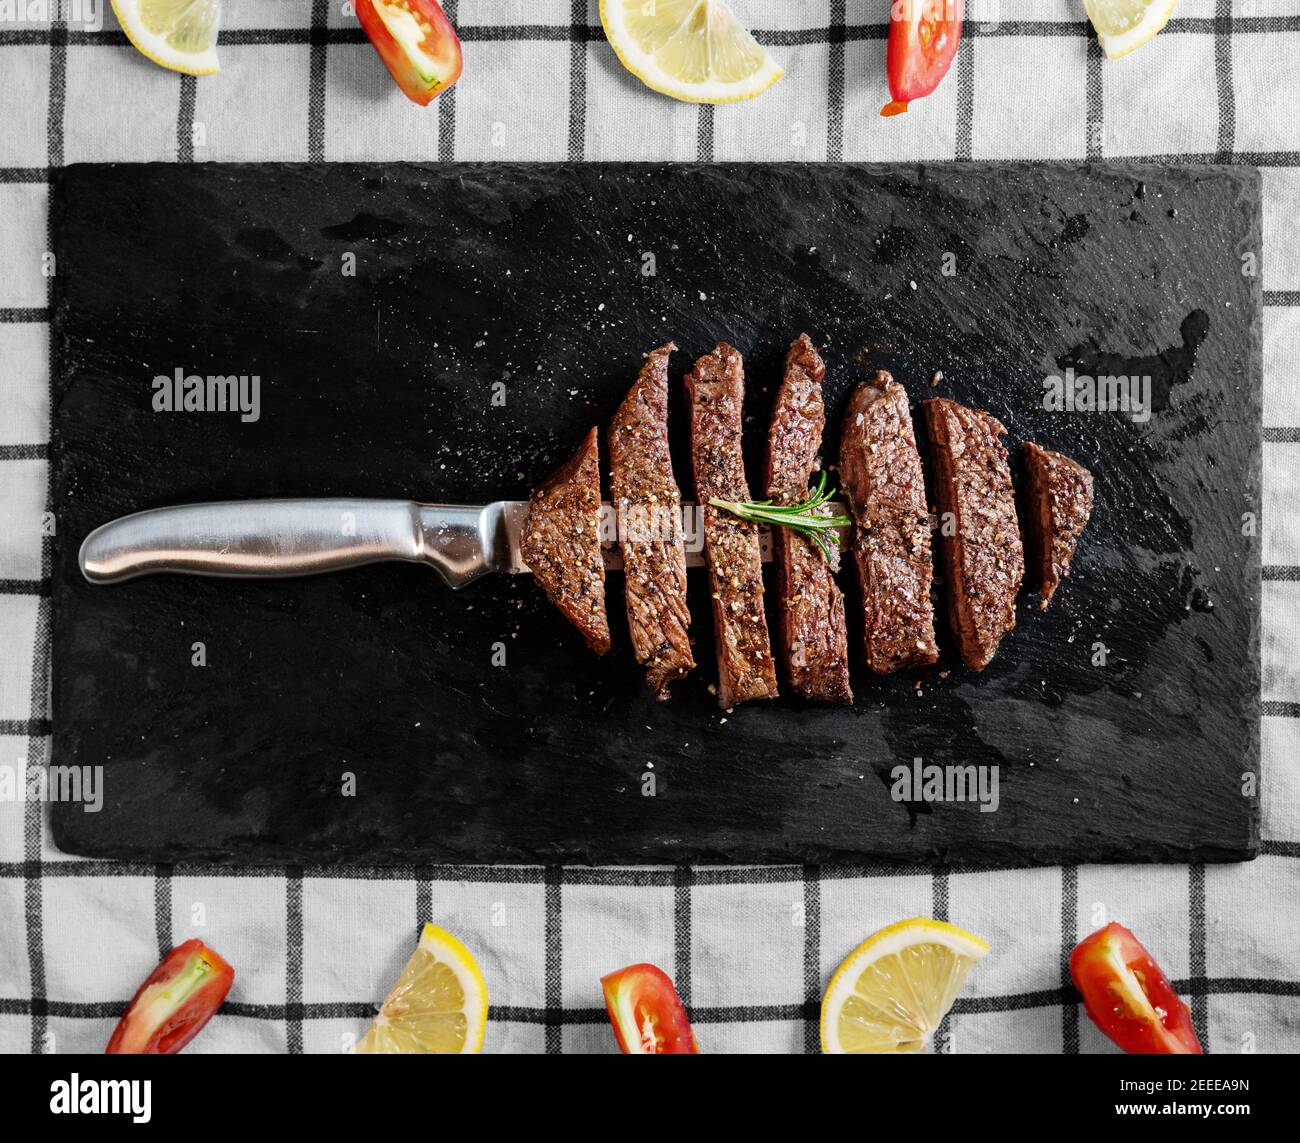 Steak de bœuf grillé, filet de bœuf sur une assiette de pierre noire avec tomates et citron Banque D'Images